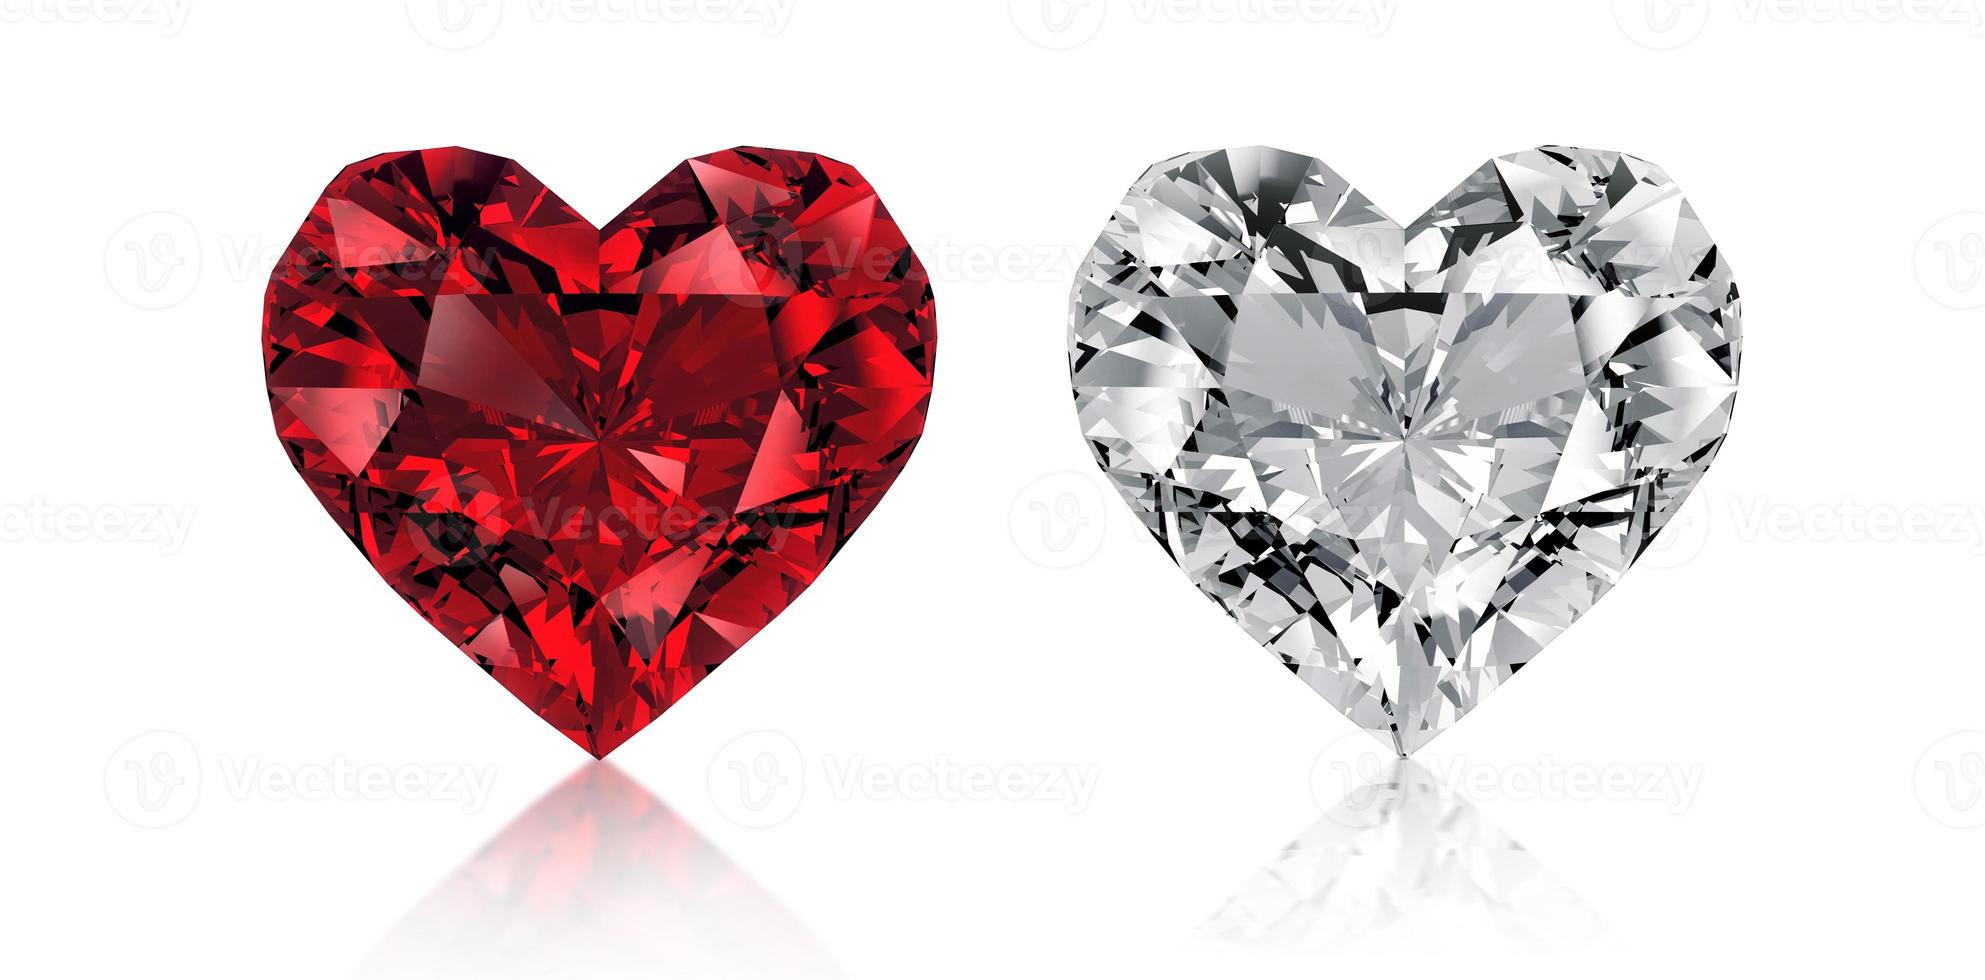 rode hartvormige diamant, geïsoleerd op een witte achtergrond foto